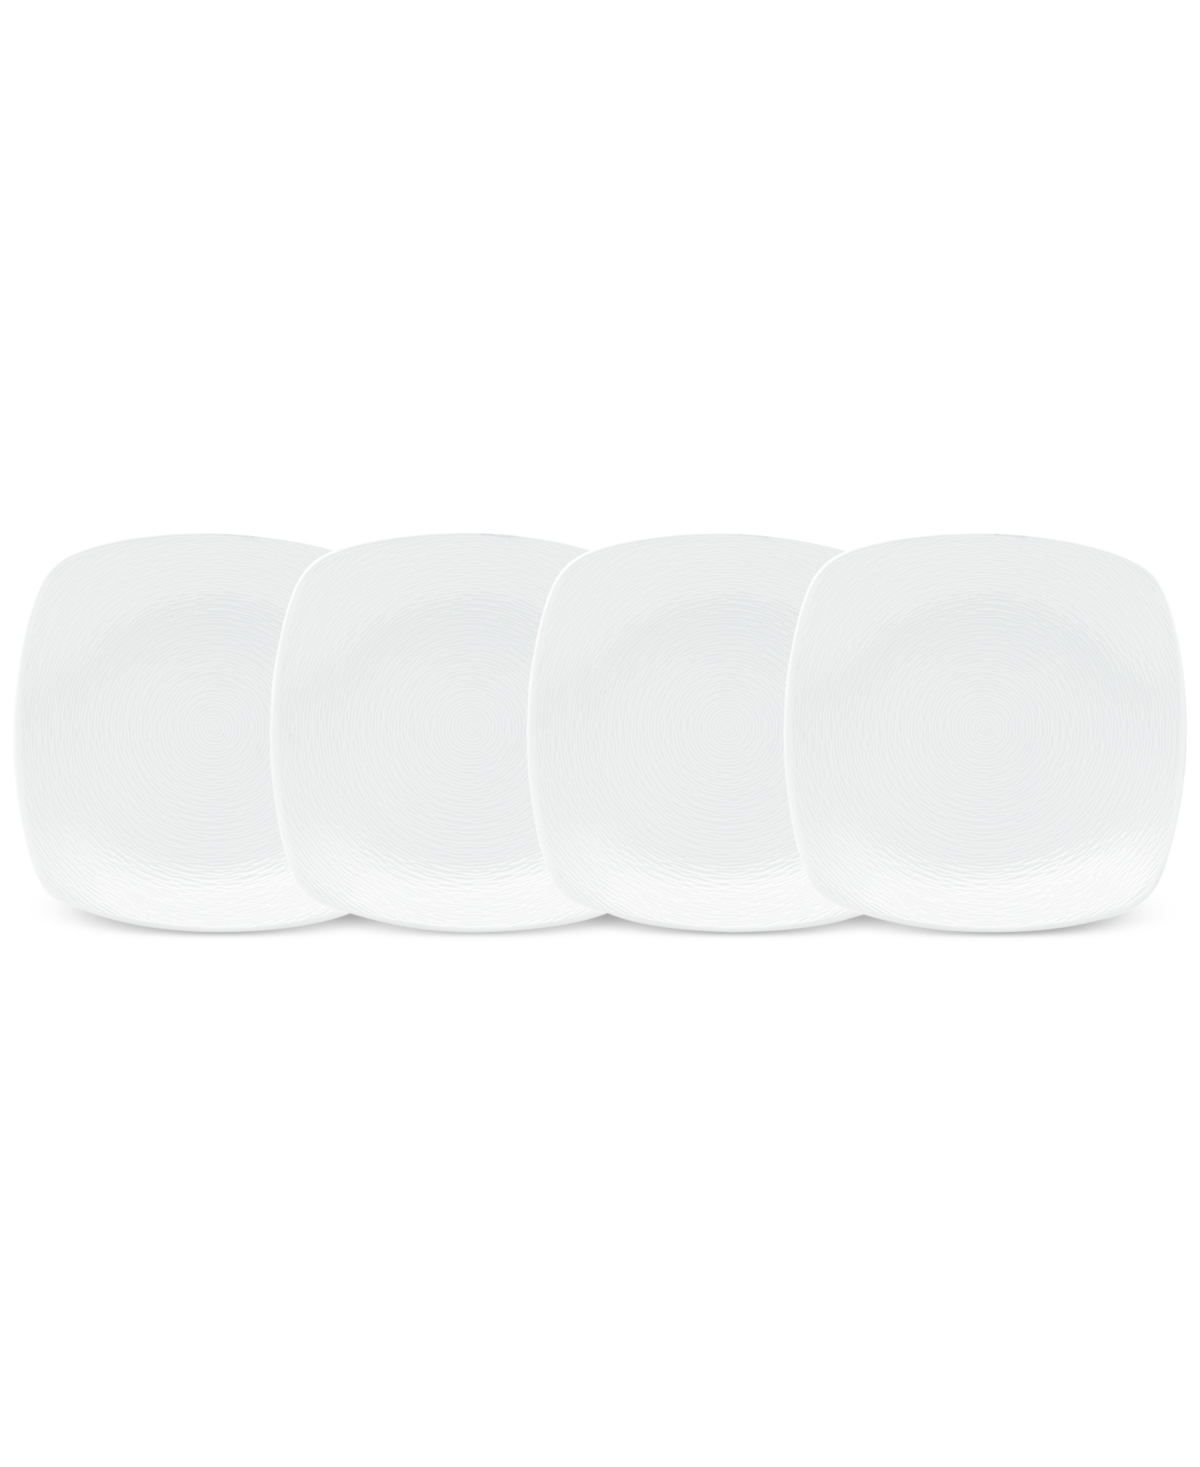 Swirl 4-Pc. Square Appetizer Plates - White